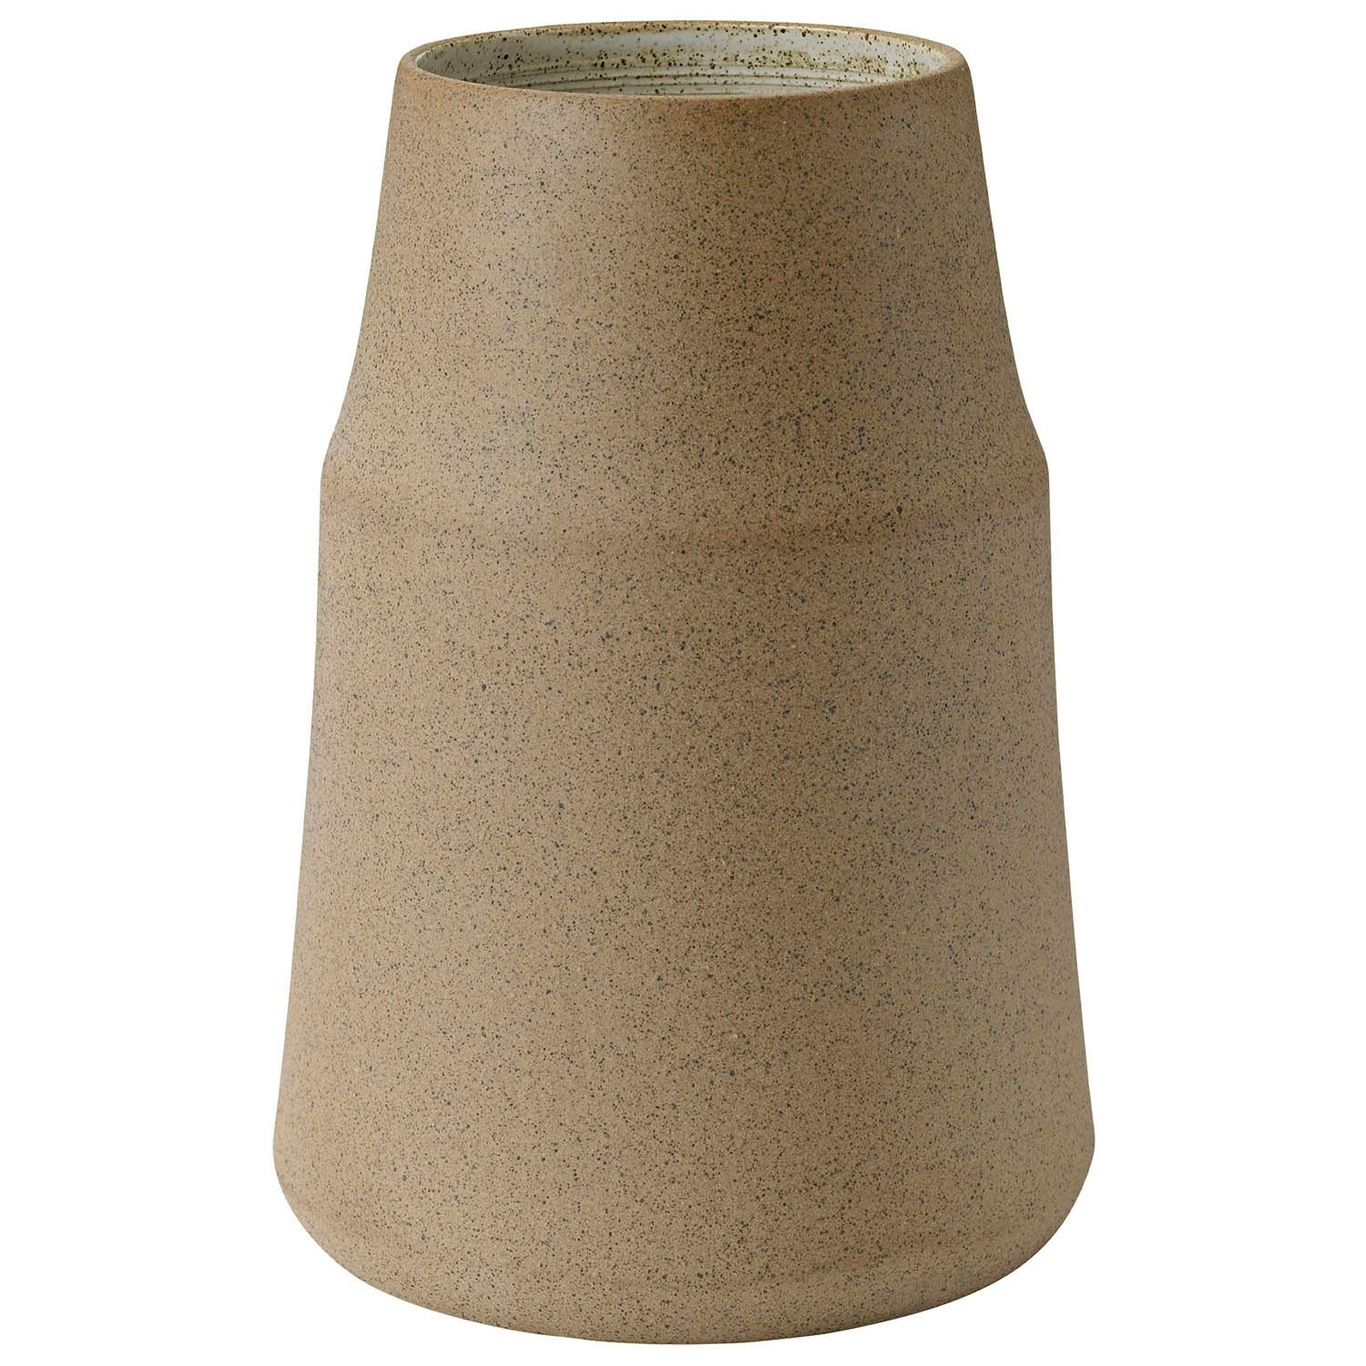 Clay Vase, 18 cm